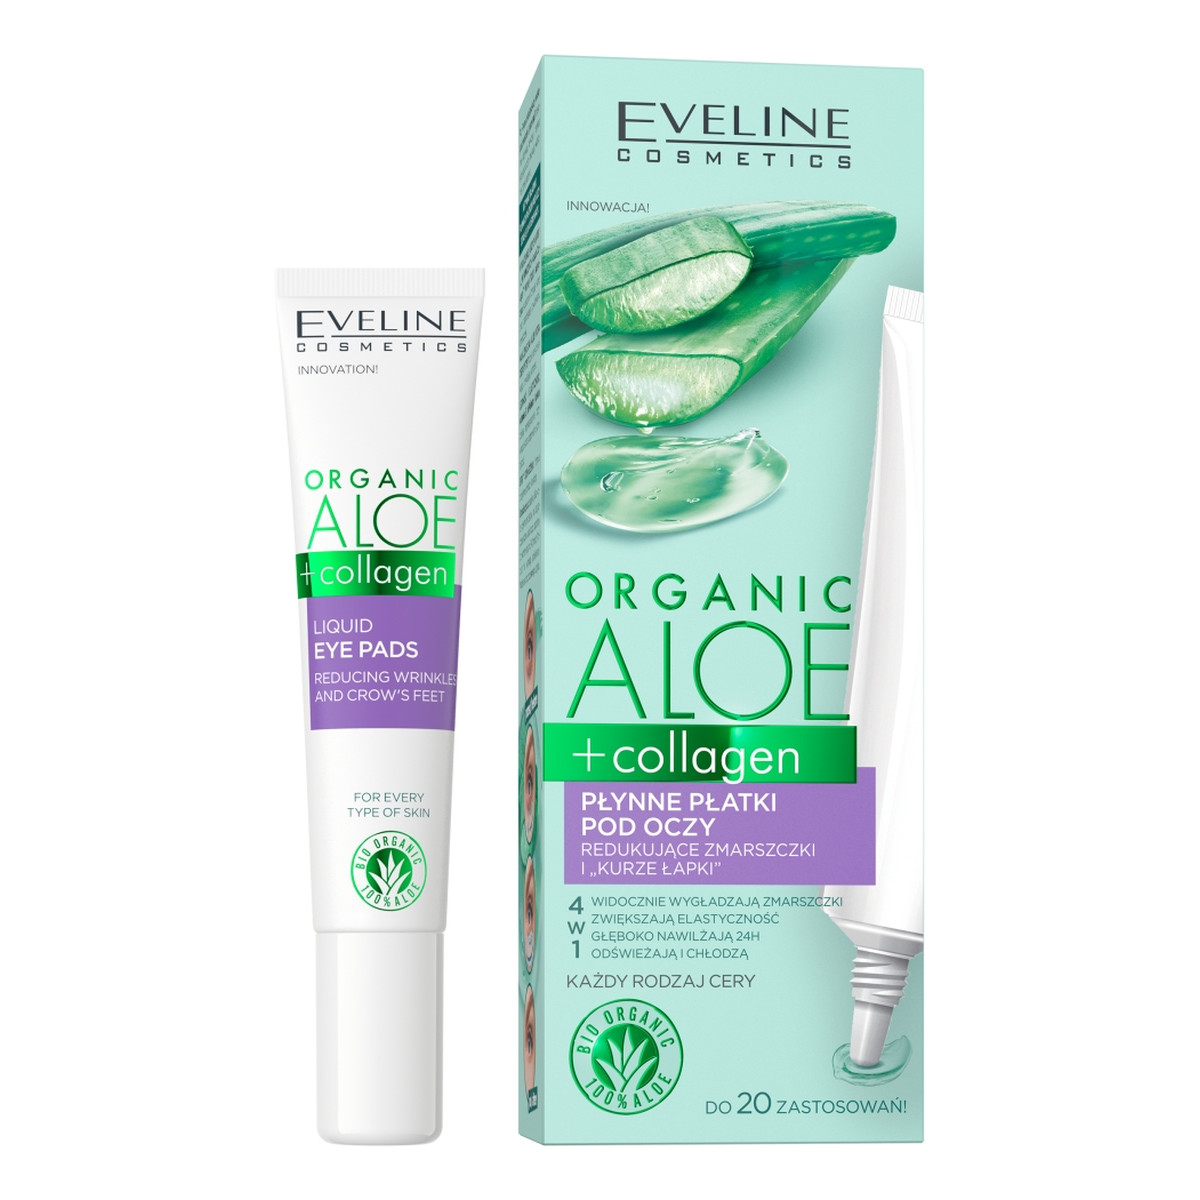 Eveline Organic aloe + collagen płynne płatki pod oczy redukujące zmarszczki i kurze łapki 4w1